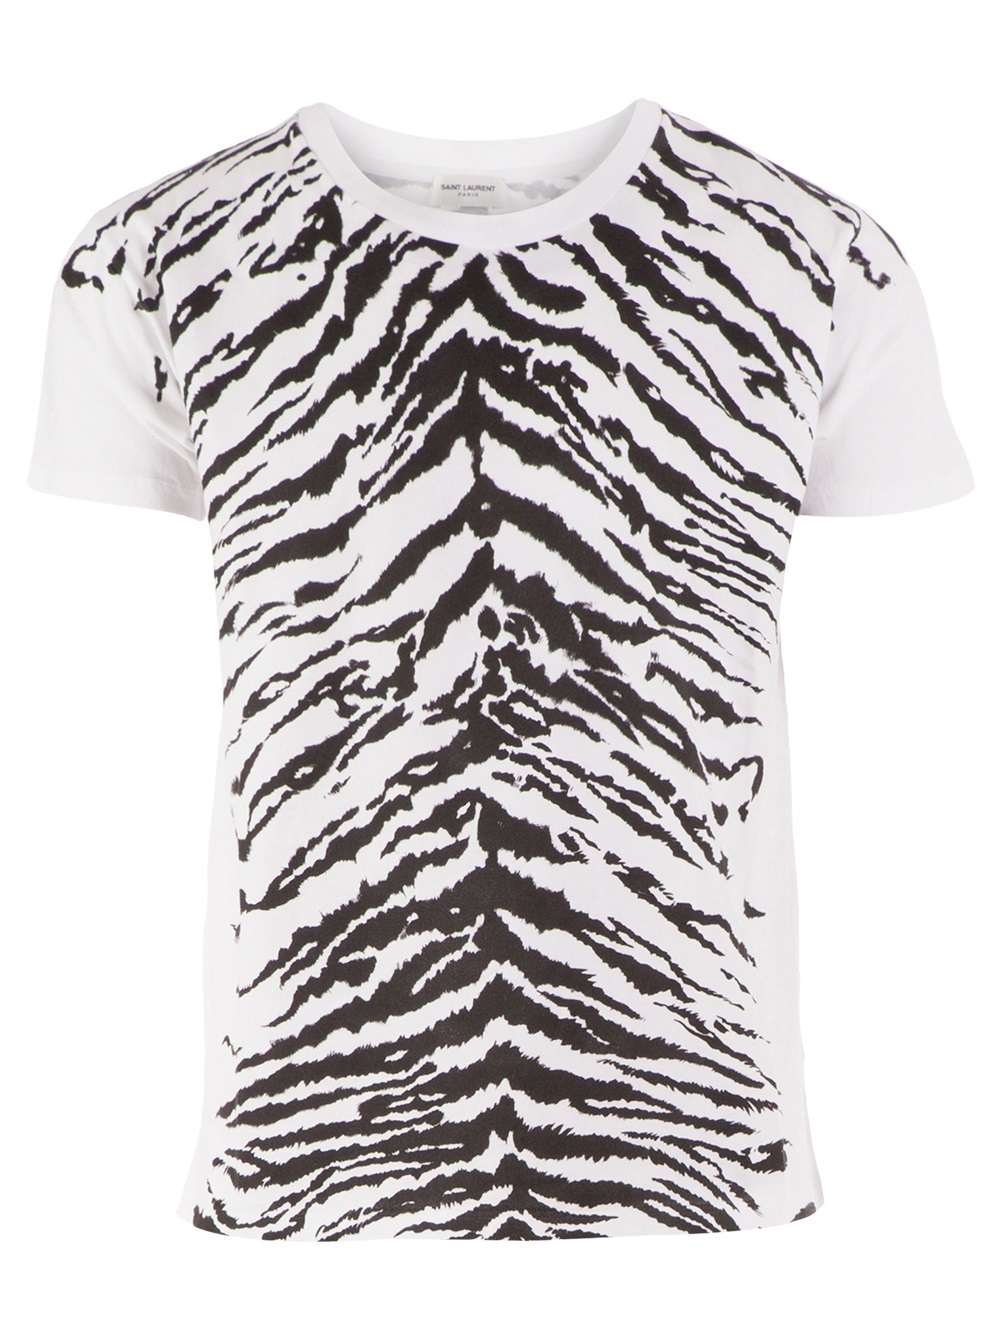 Lyst - Saint Laurent Zebra Print Tshirt in White for Men